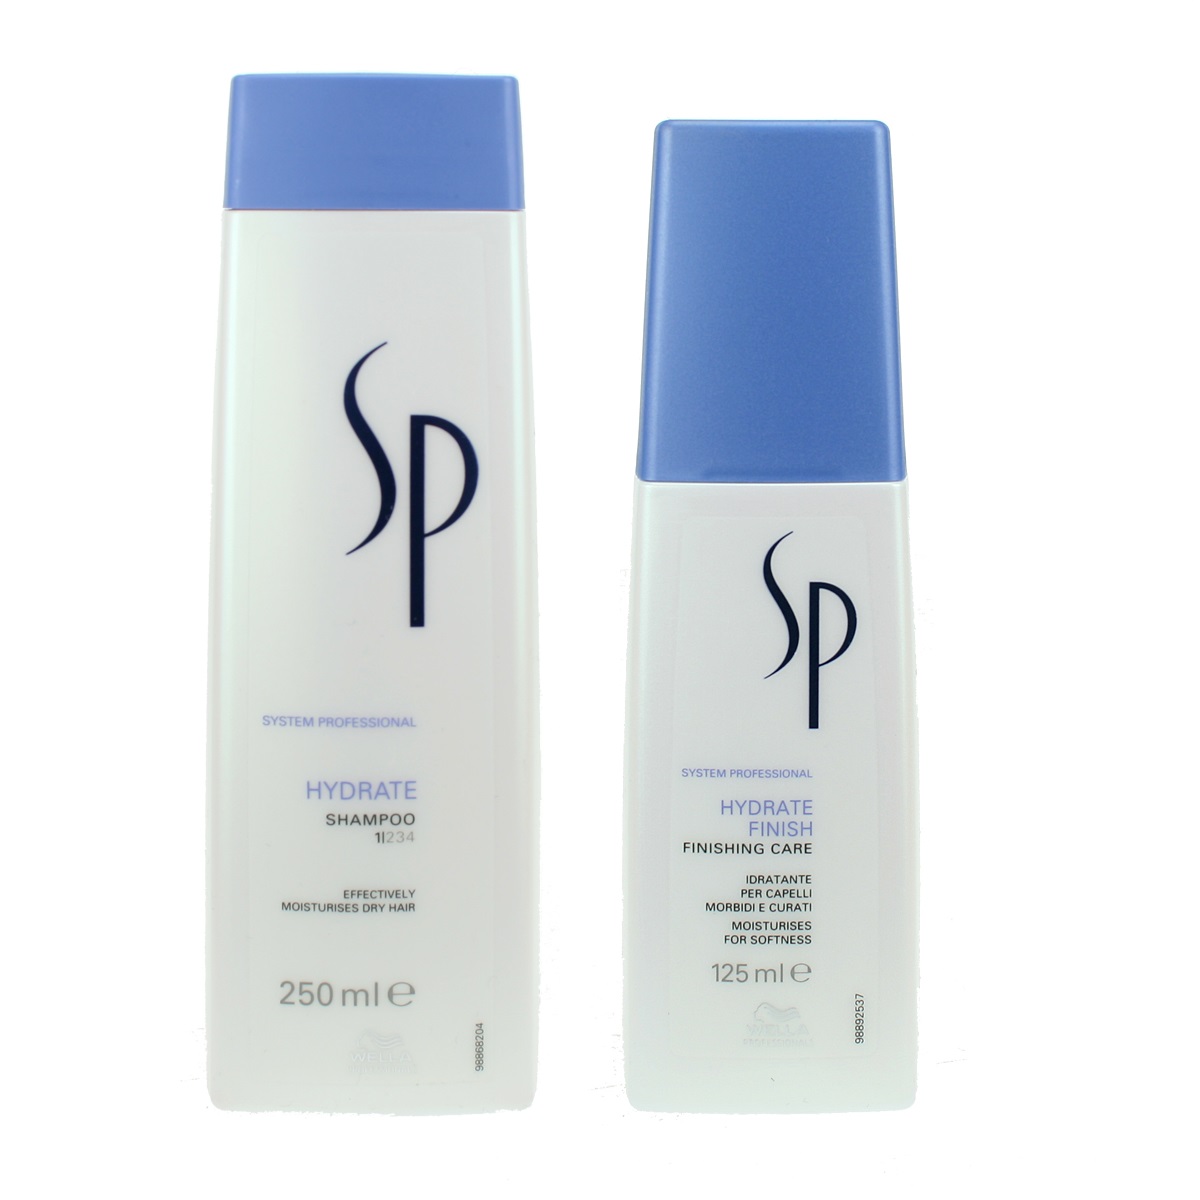 Zestaw nawilżający | SP Hydrate Finish - spray nawilżający 125ml, SP Hydrate - szampon nawilżający 250ml